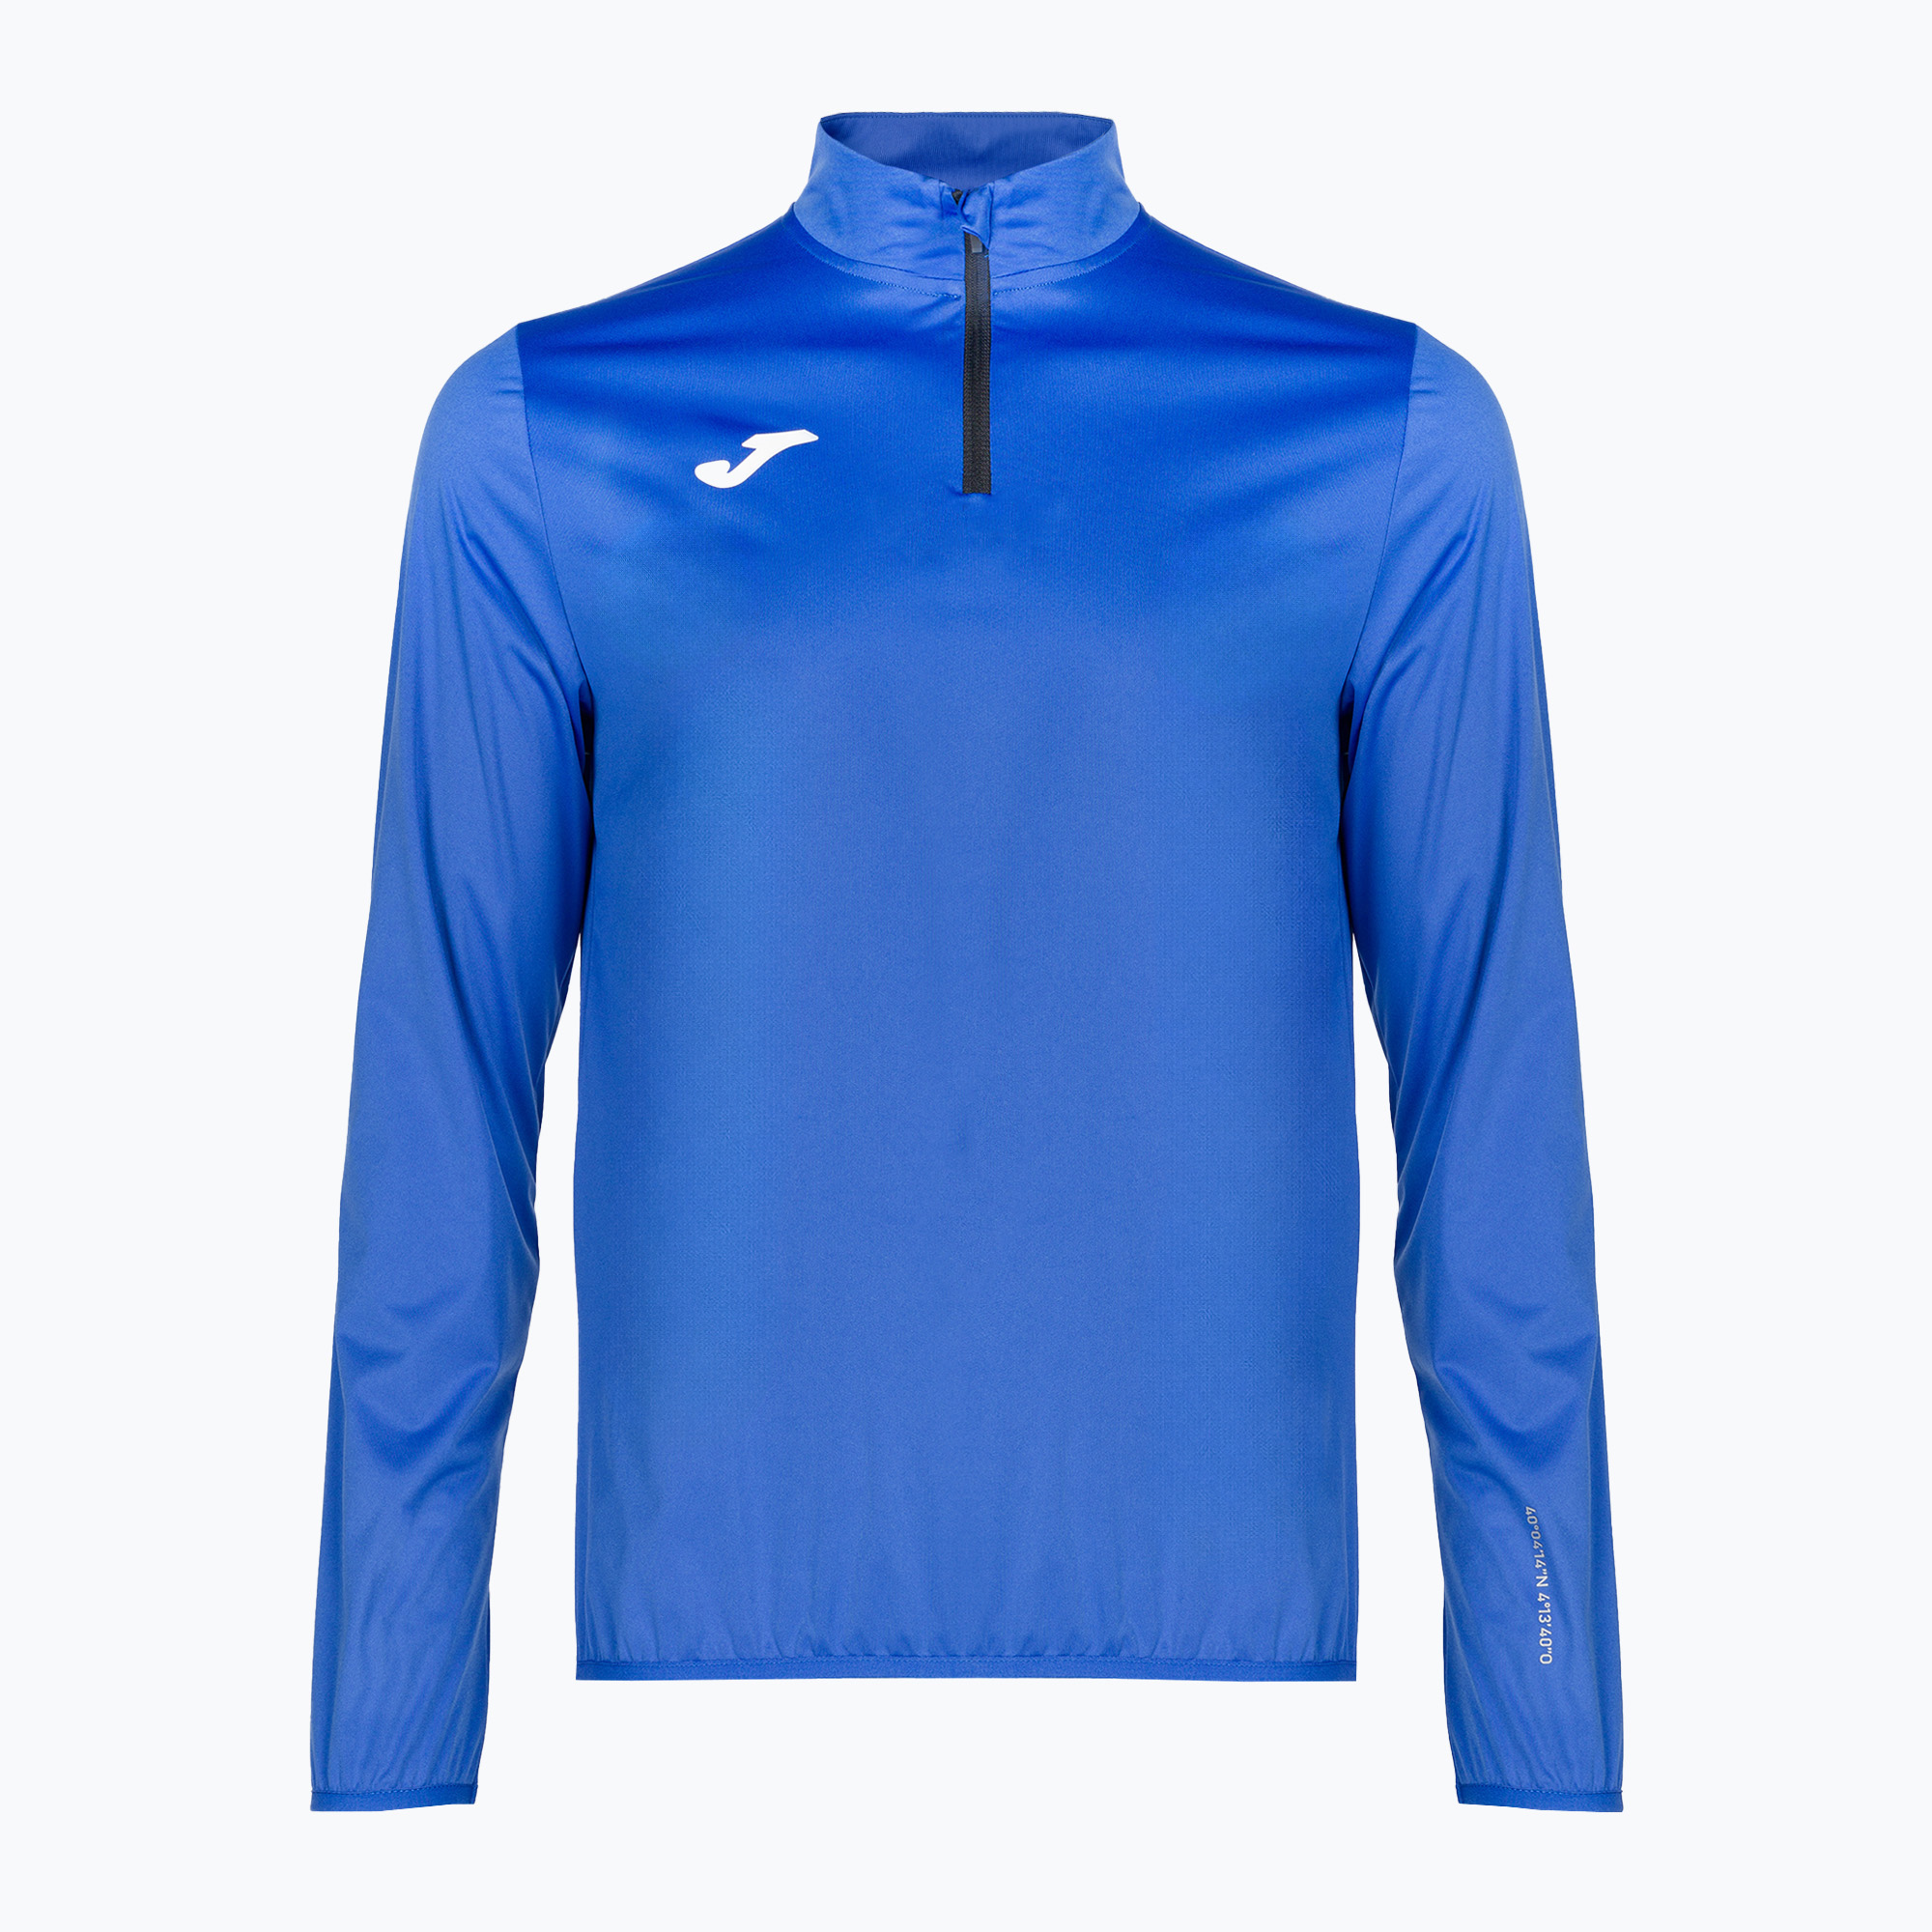 Pánska bežecká bunda Joma R-City Raincoat modrá 103169.726